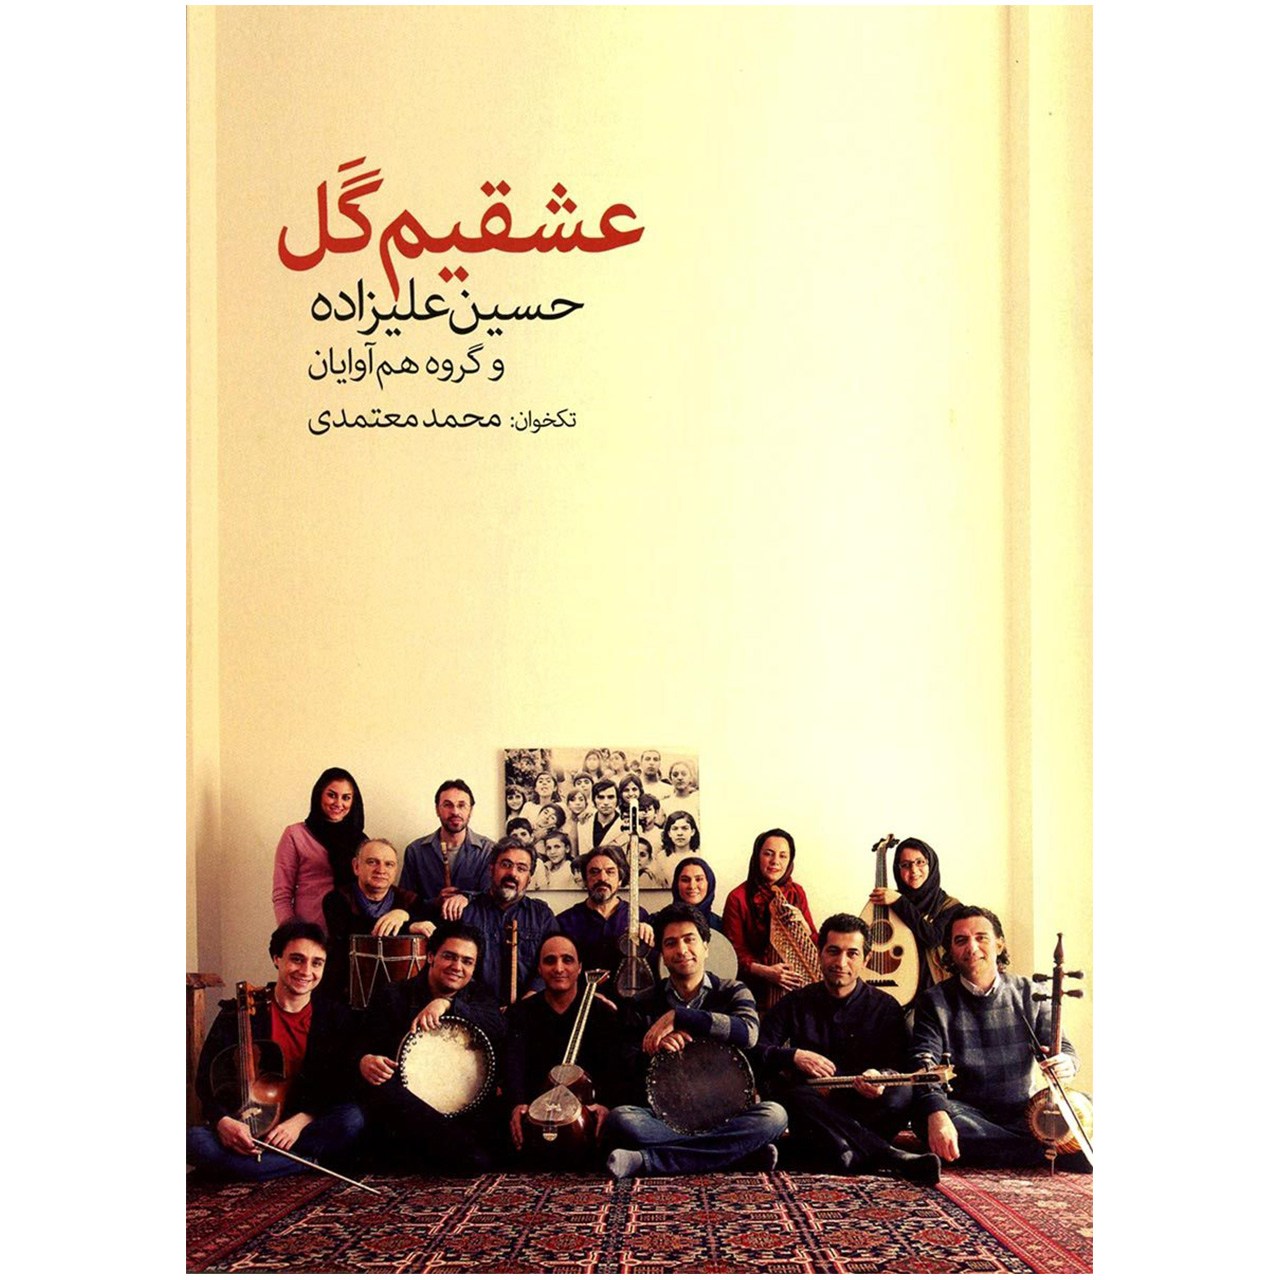 آلبوم تصویری عشقیم گل اثر حسین علیزاده و گروه هم آوایان